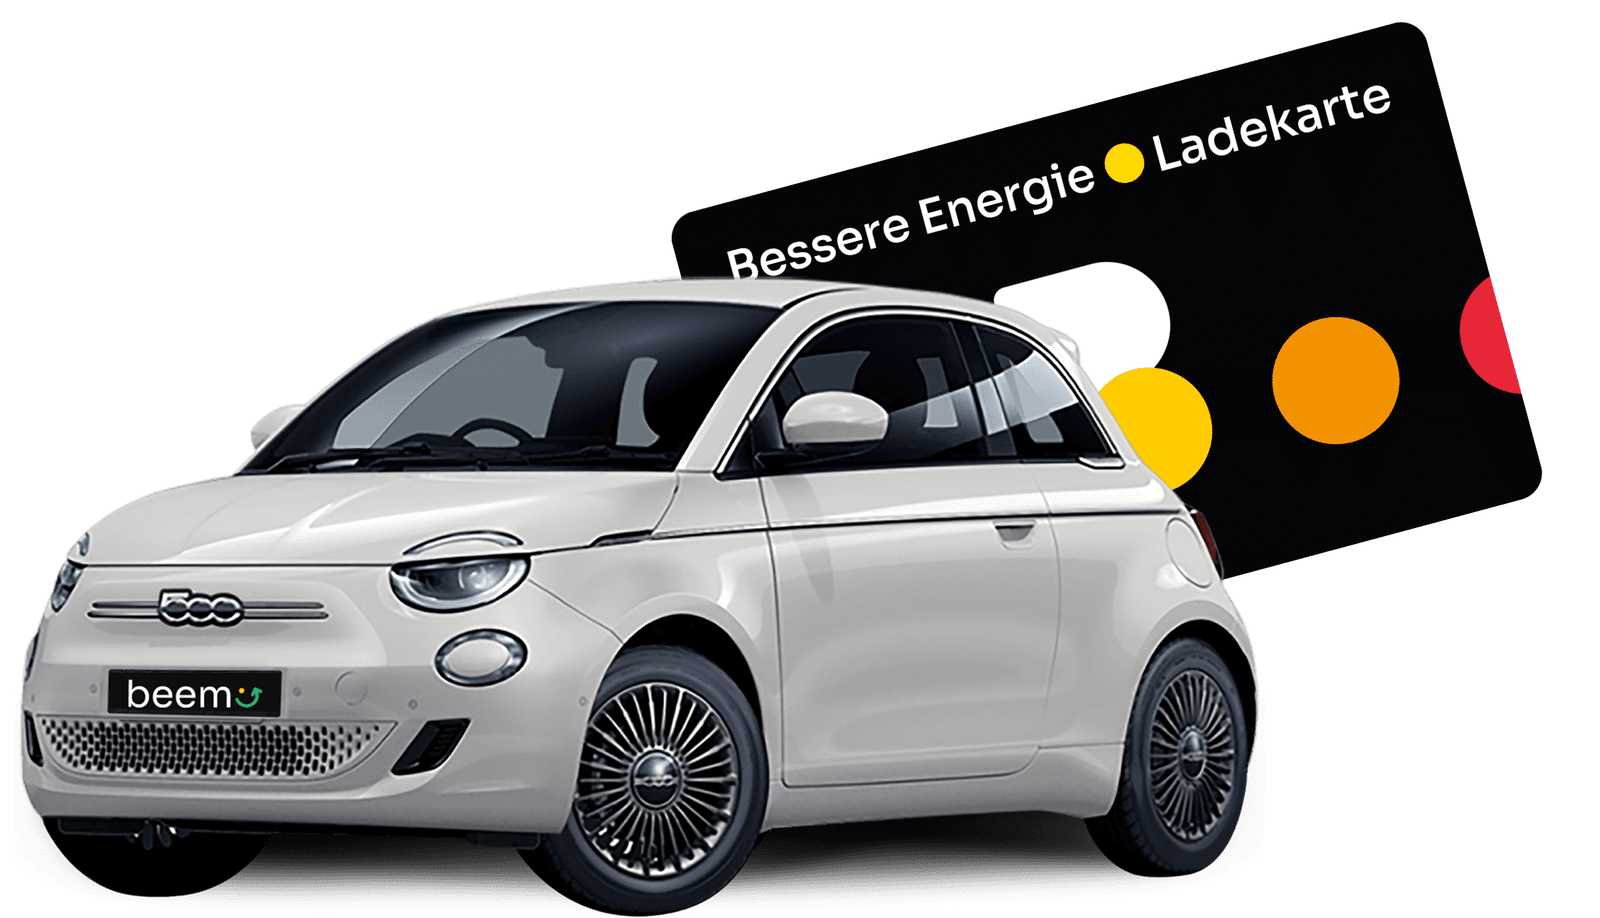 beem Fiat 500e Hatchback mit Bessere Energie Ladekarte